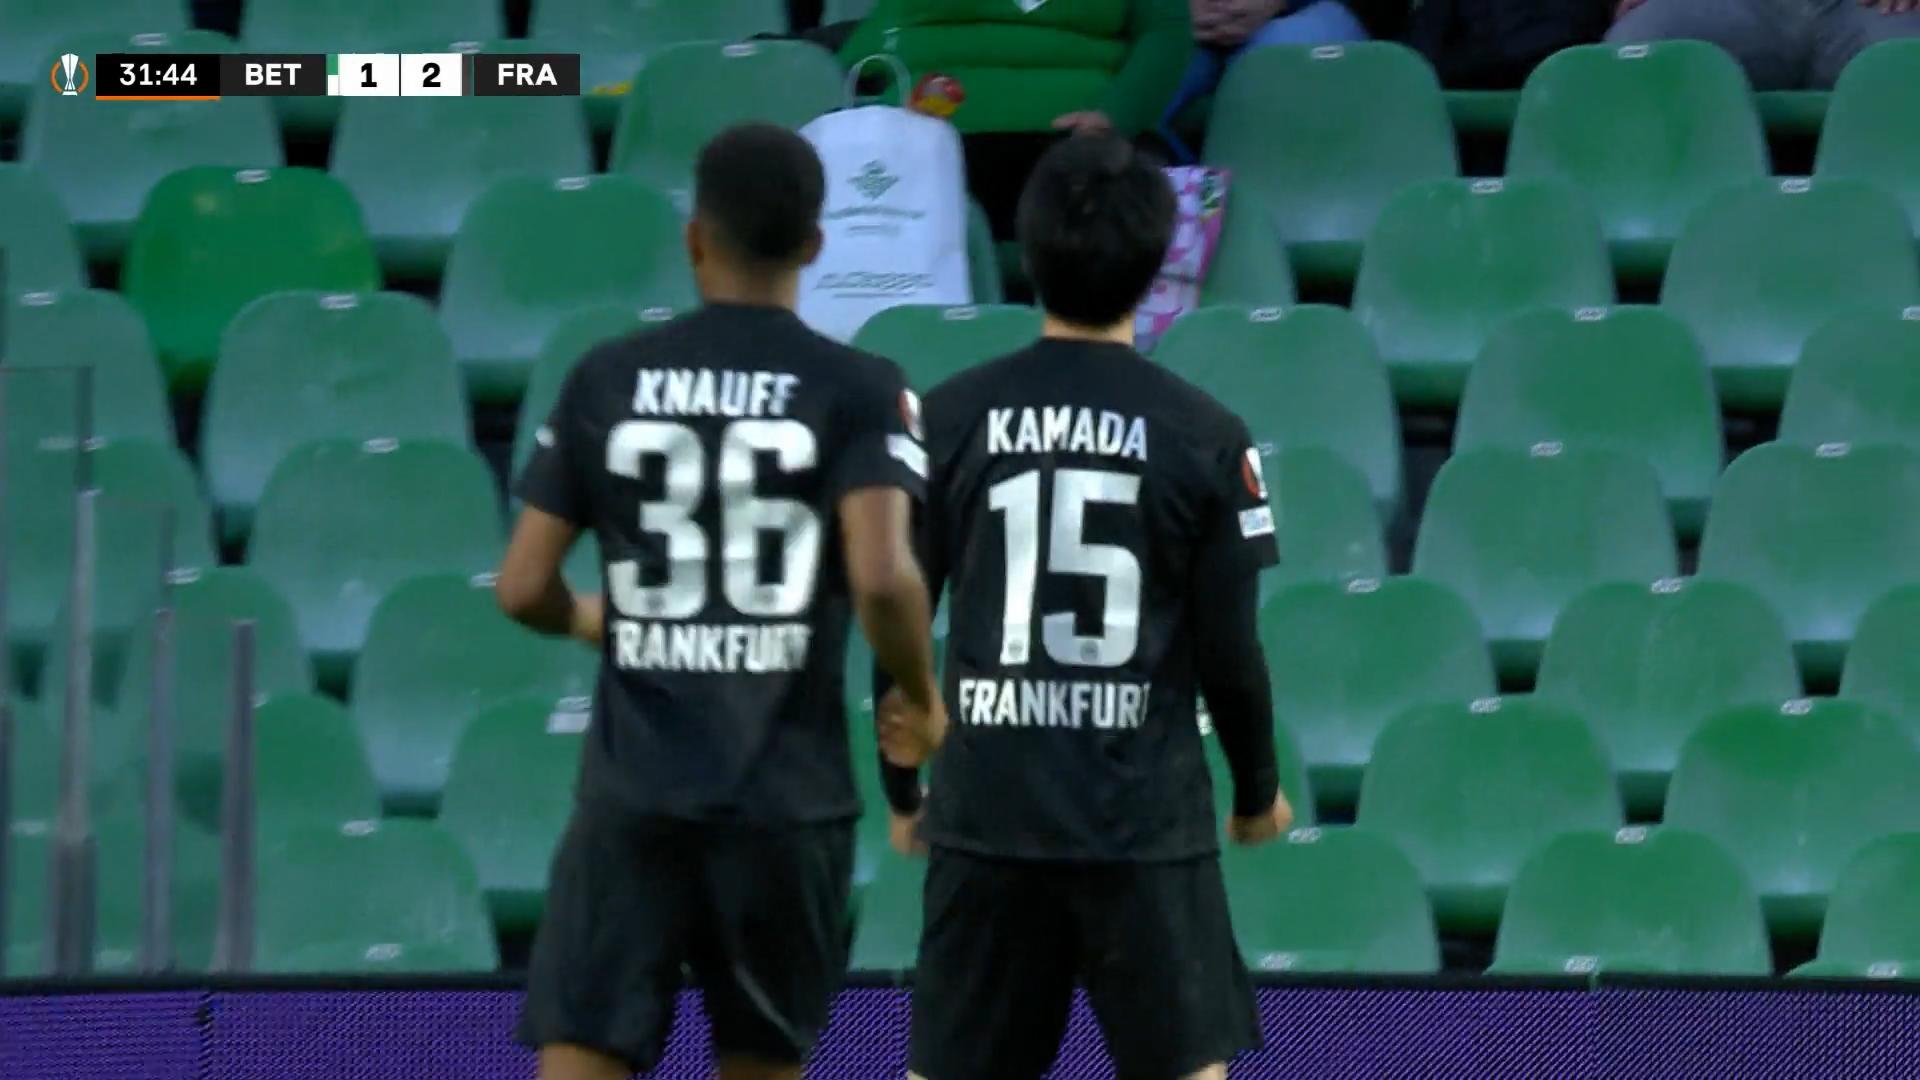 Kamada lässt Frankfurt erneut jubeln Europa League